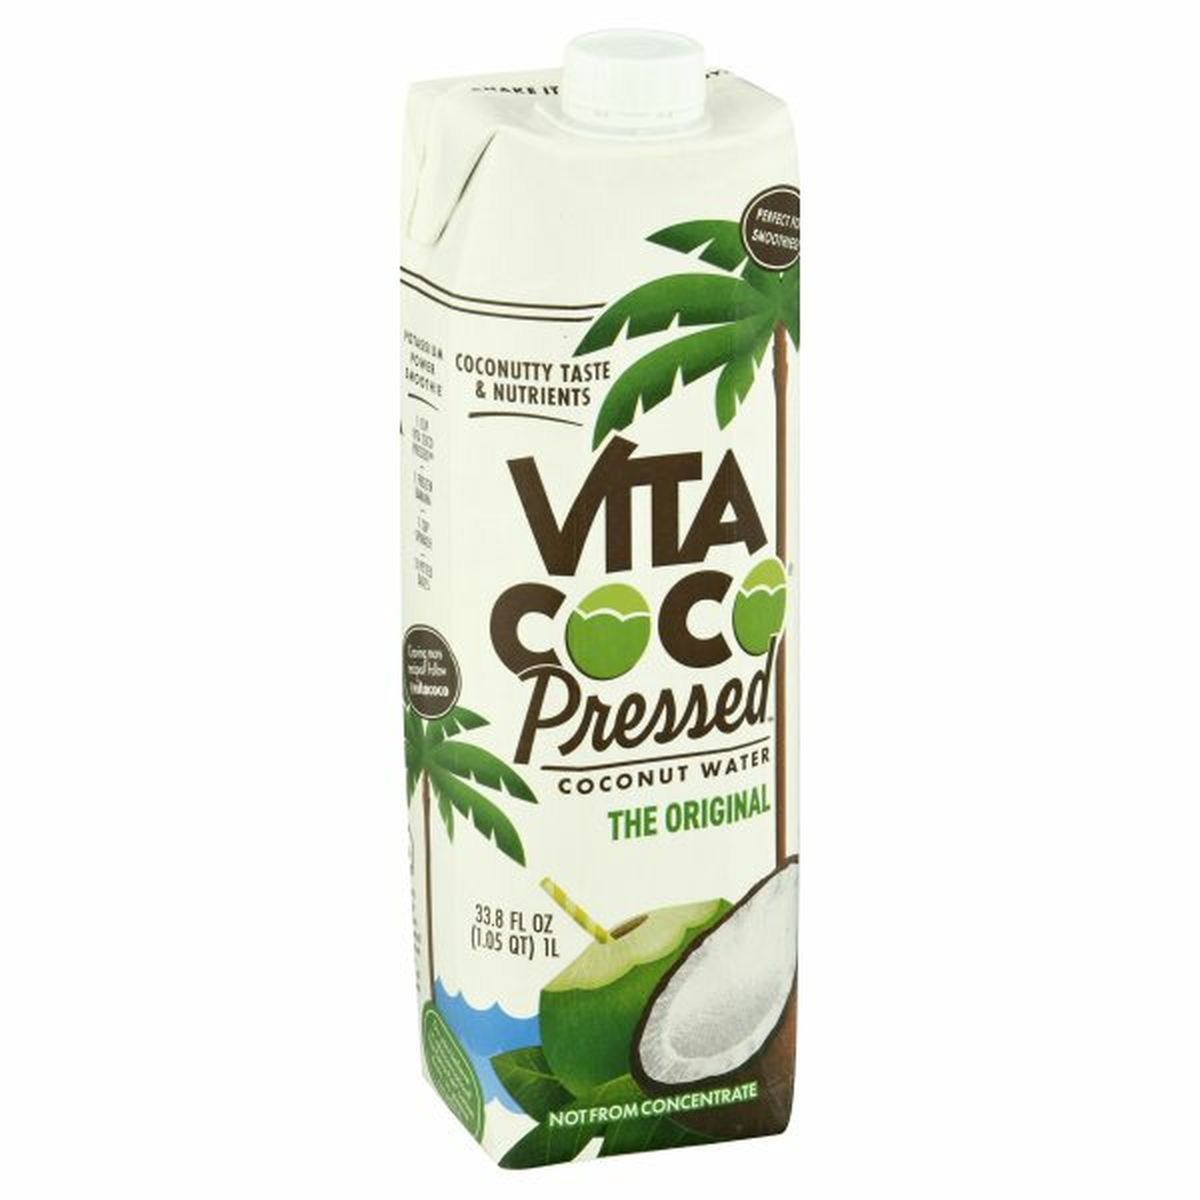 Calories in Vita Coco Coconut Water, The Original, Pressed